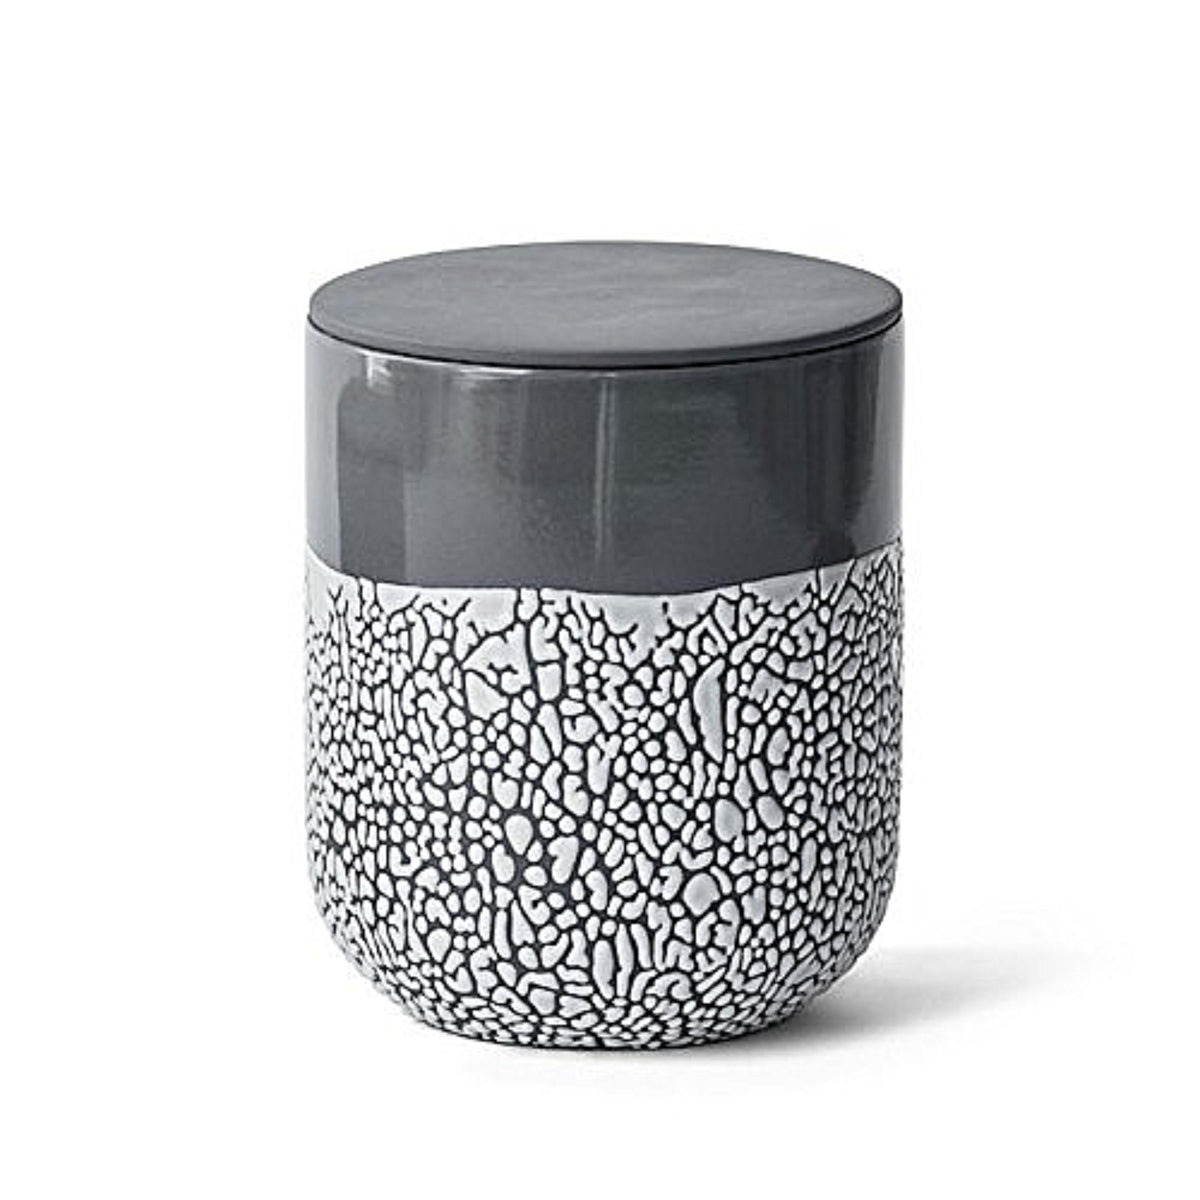 HOSLEY®  Ceramic Lichen Box, 6.5 inches High